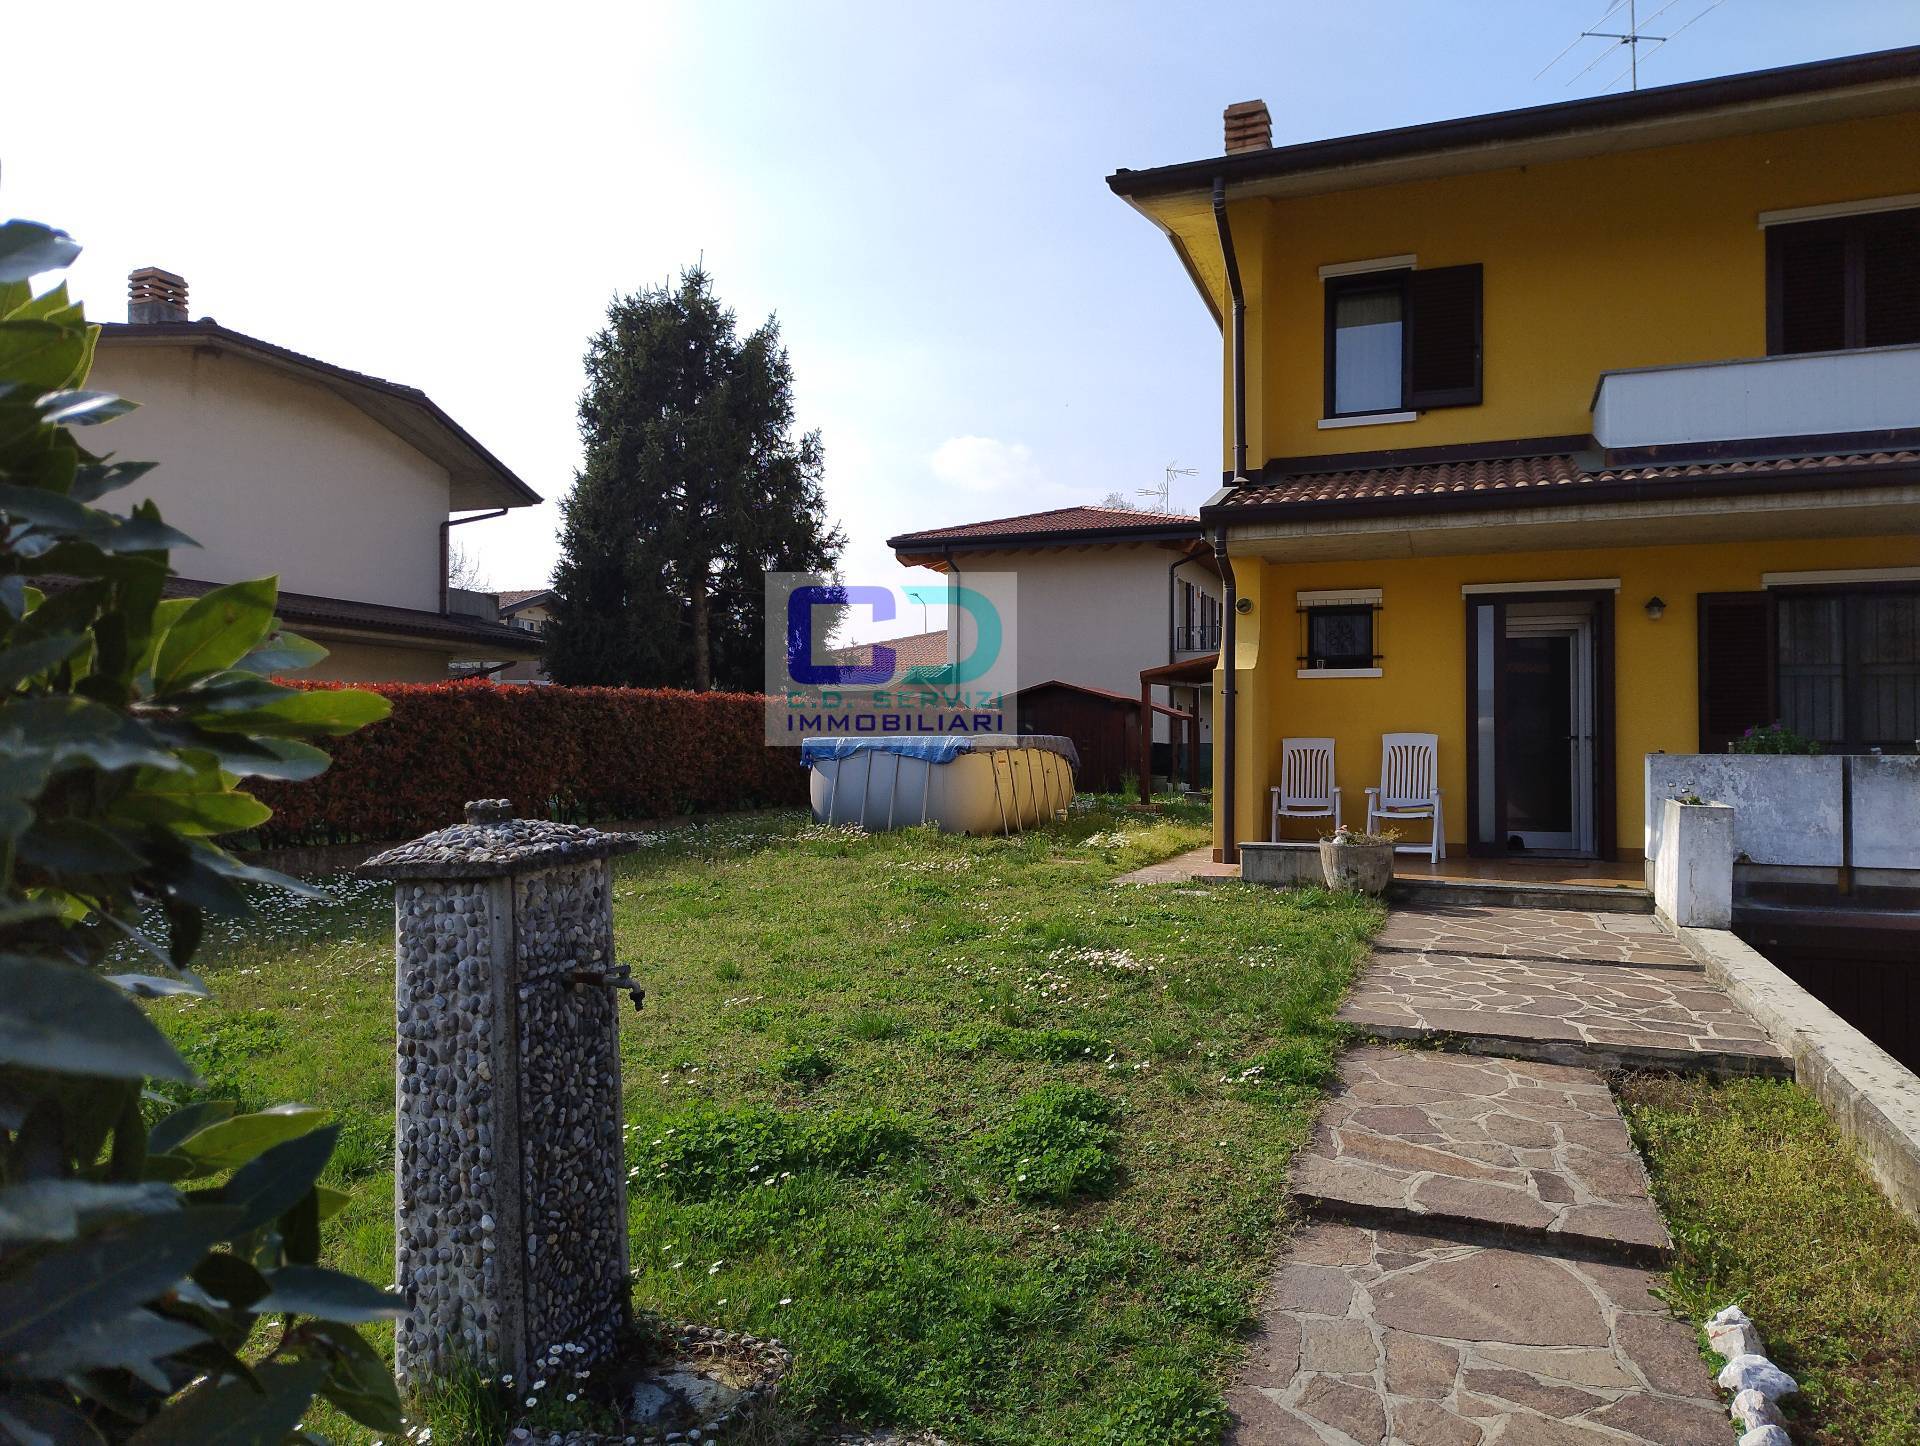 Villa a Schiera in vendita a Cassano d'Adda, 4 locali, zona Località: GroppellodAdda, prezzo € 250.000 | PortaleAgenzieImmobiliari.it